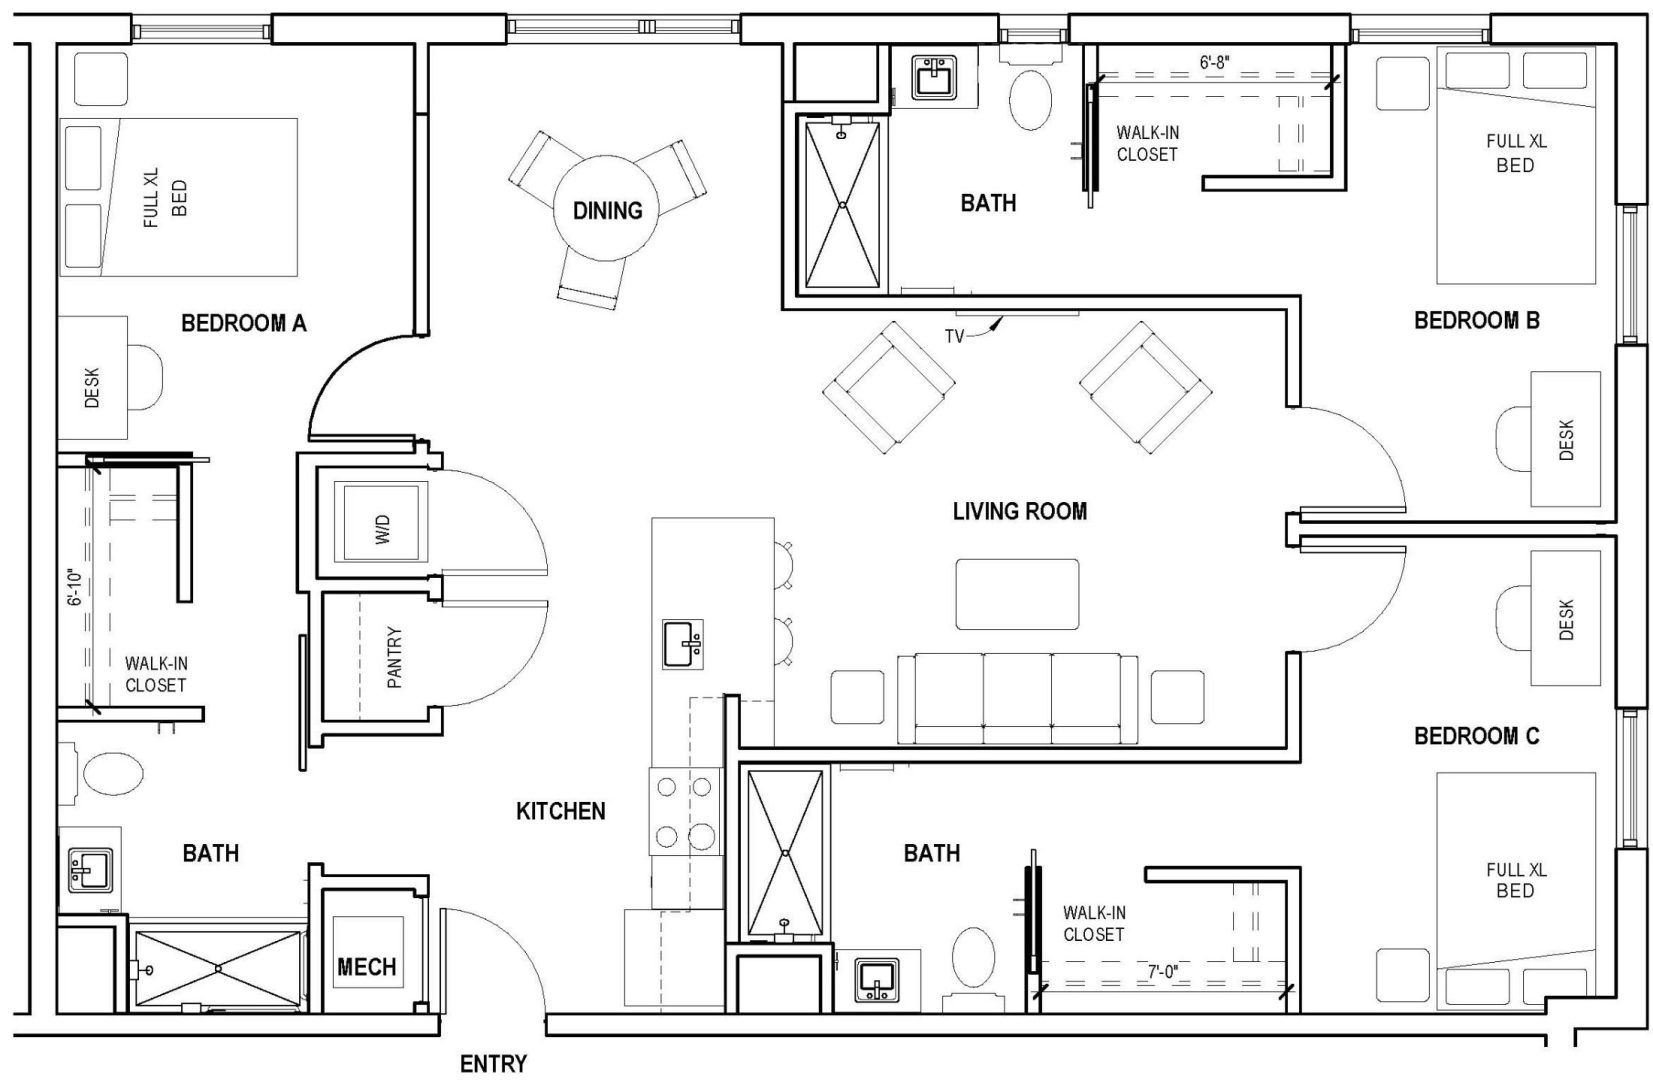 3 - bedroom Floorplans | The Coda on Crouse